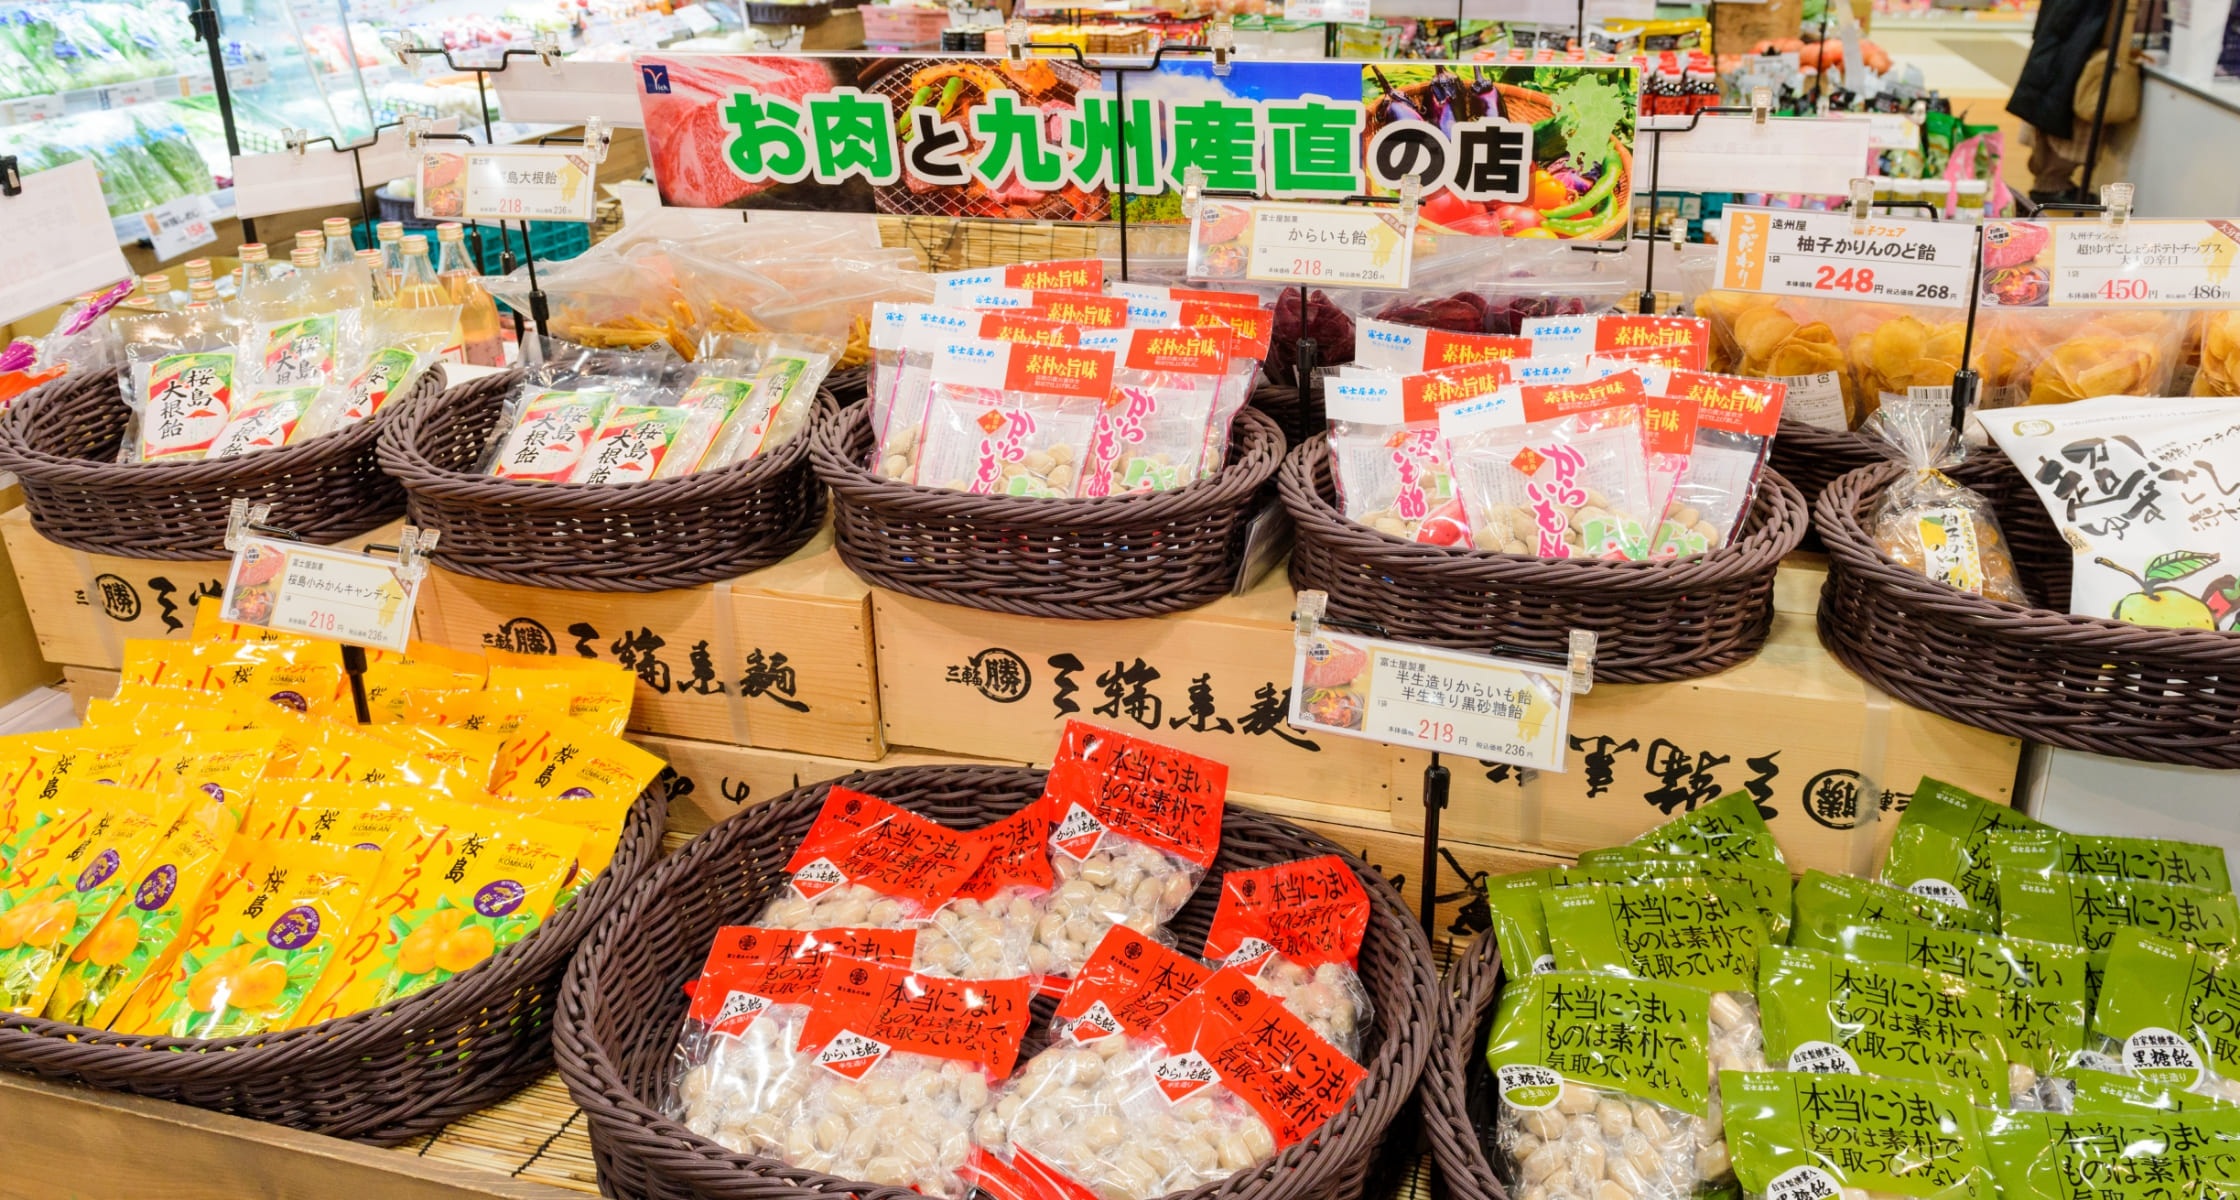 生鮮市場richばんばん貝塚店の特徴